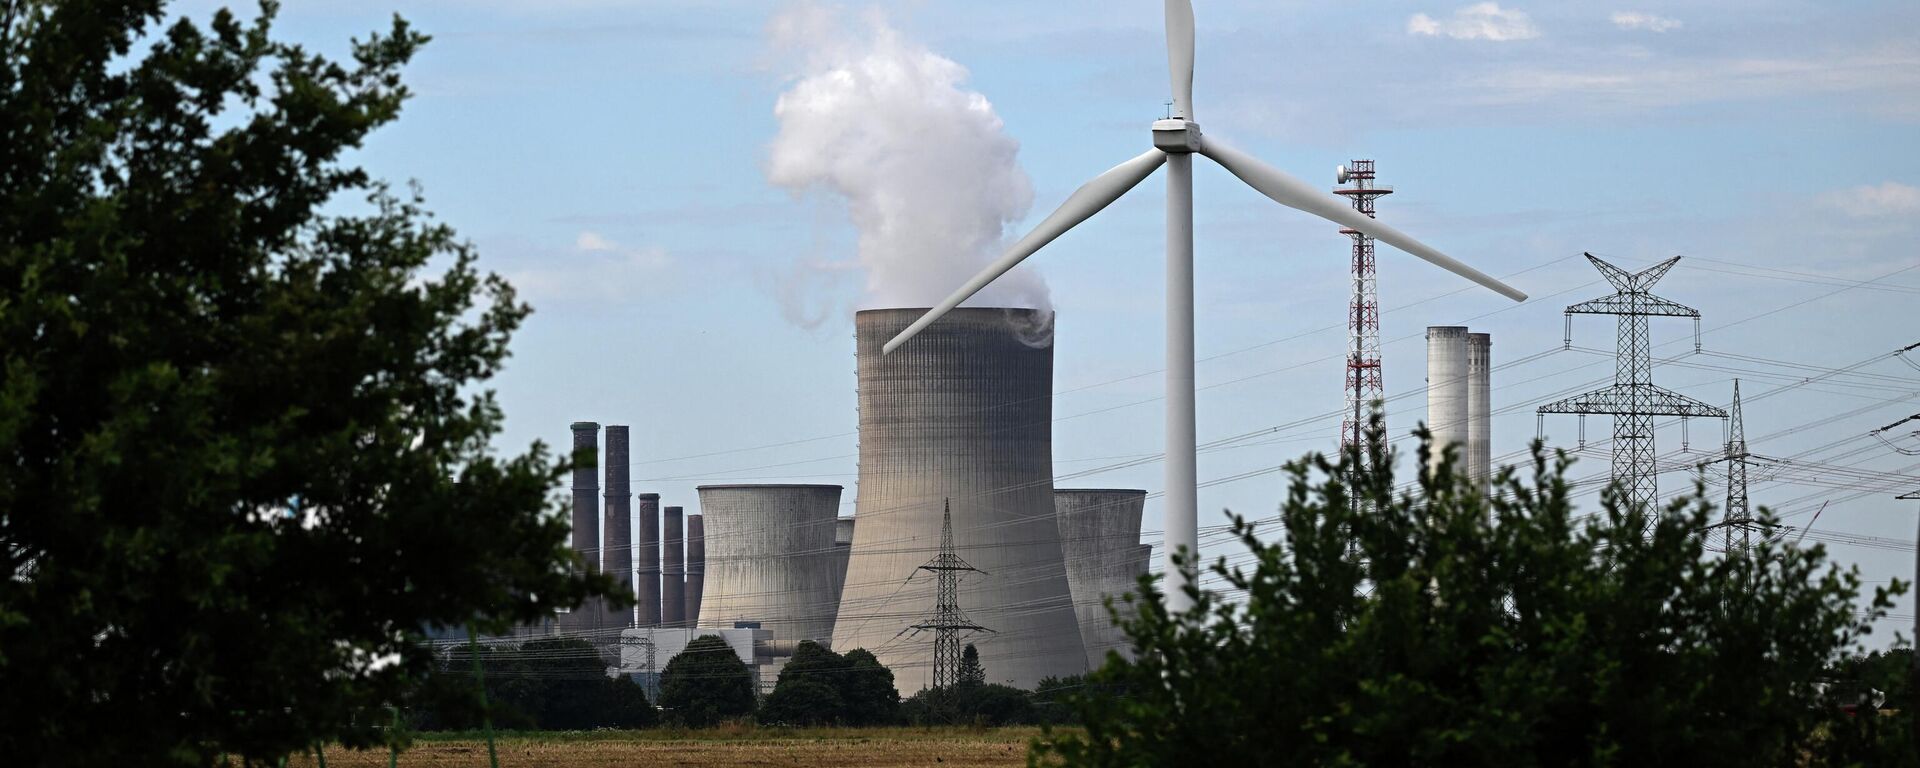 Turbina eólica é vista em frente a uma usina a carvão operada pela fornecedora de energia alemã RWE em Niederaussem, no oeste da Alemanha, em 13 de julho de 2022 (foto de arquivo) - Sputnik Brasil, 1920, 11.09.2022